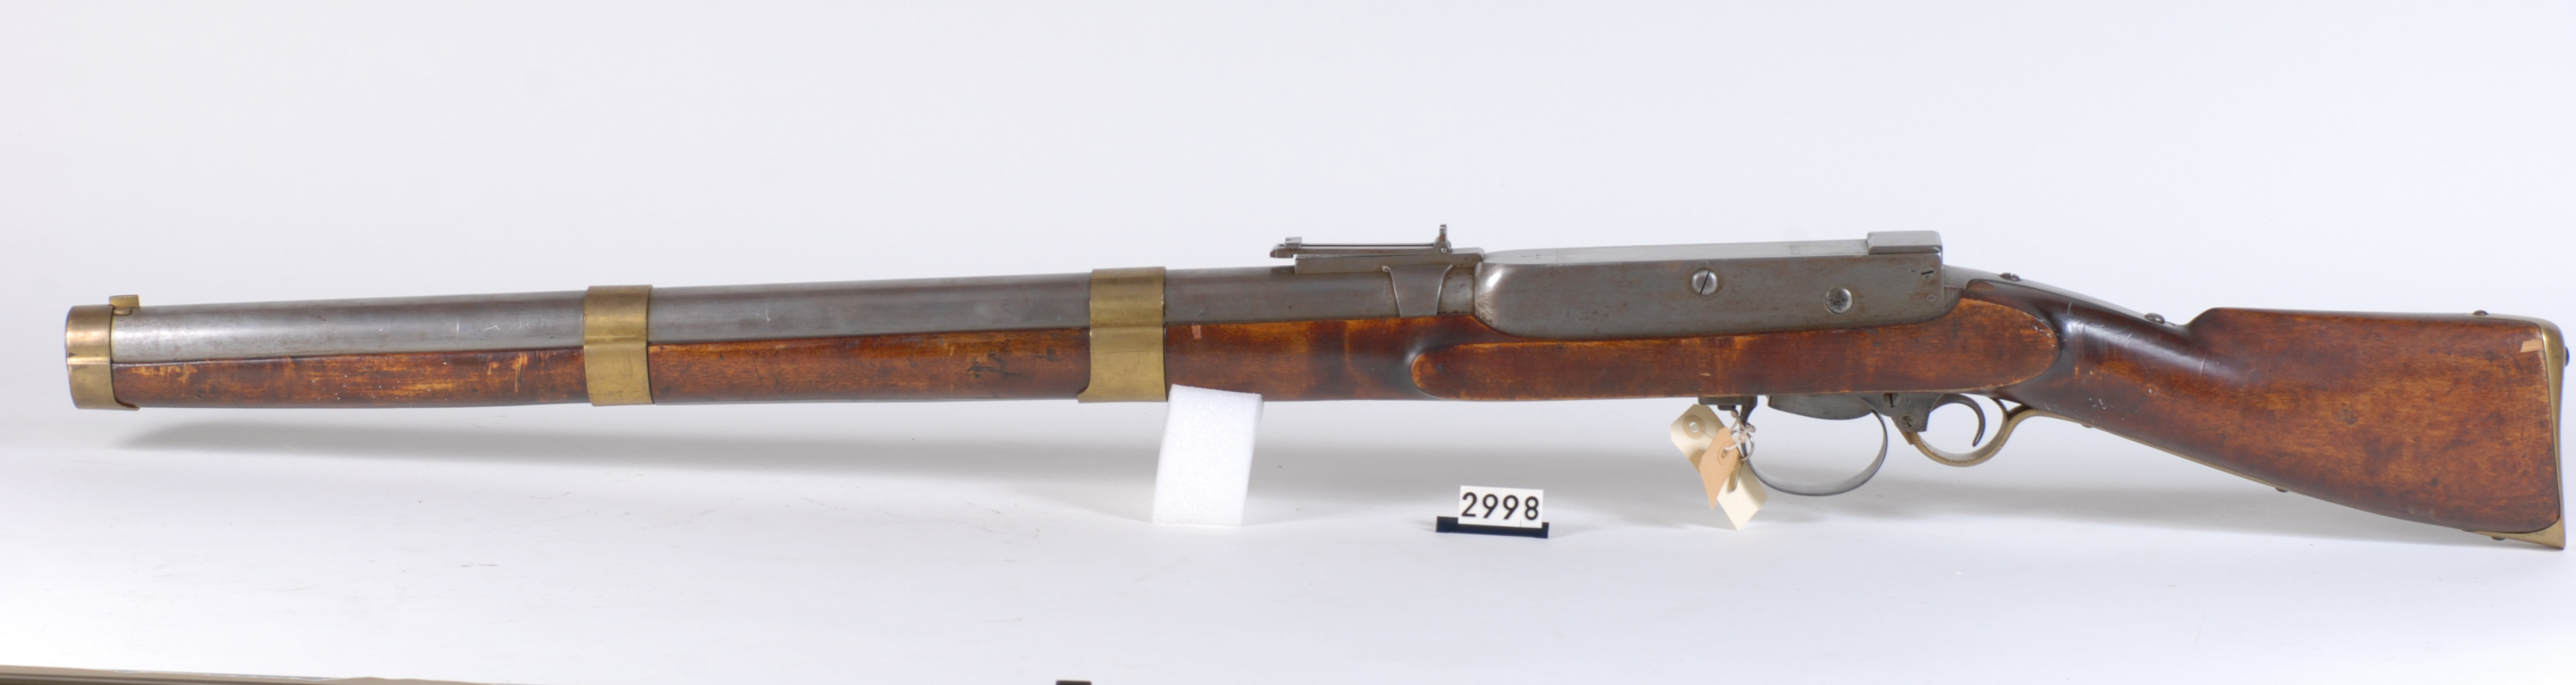 ./guns/rifle/bilder/Rifle-Kongsberg-Kammerlader-Vollgrav-1864-2.jpg